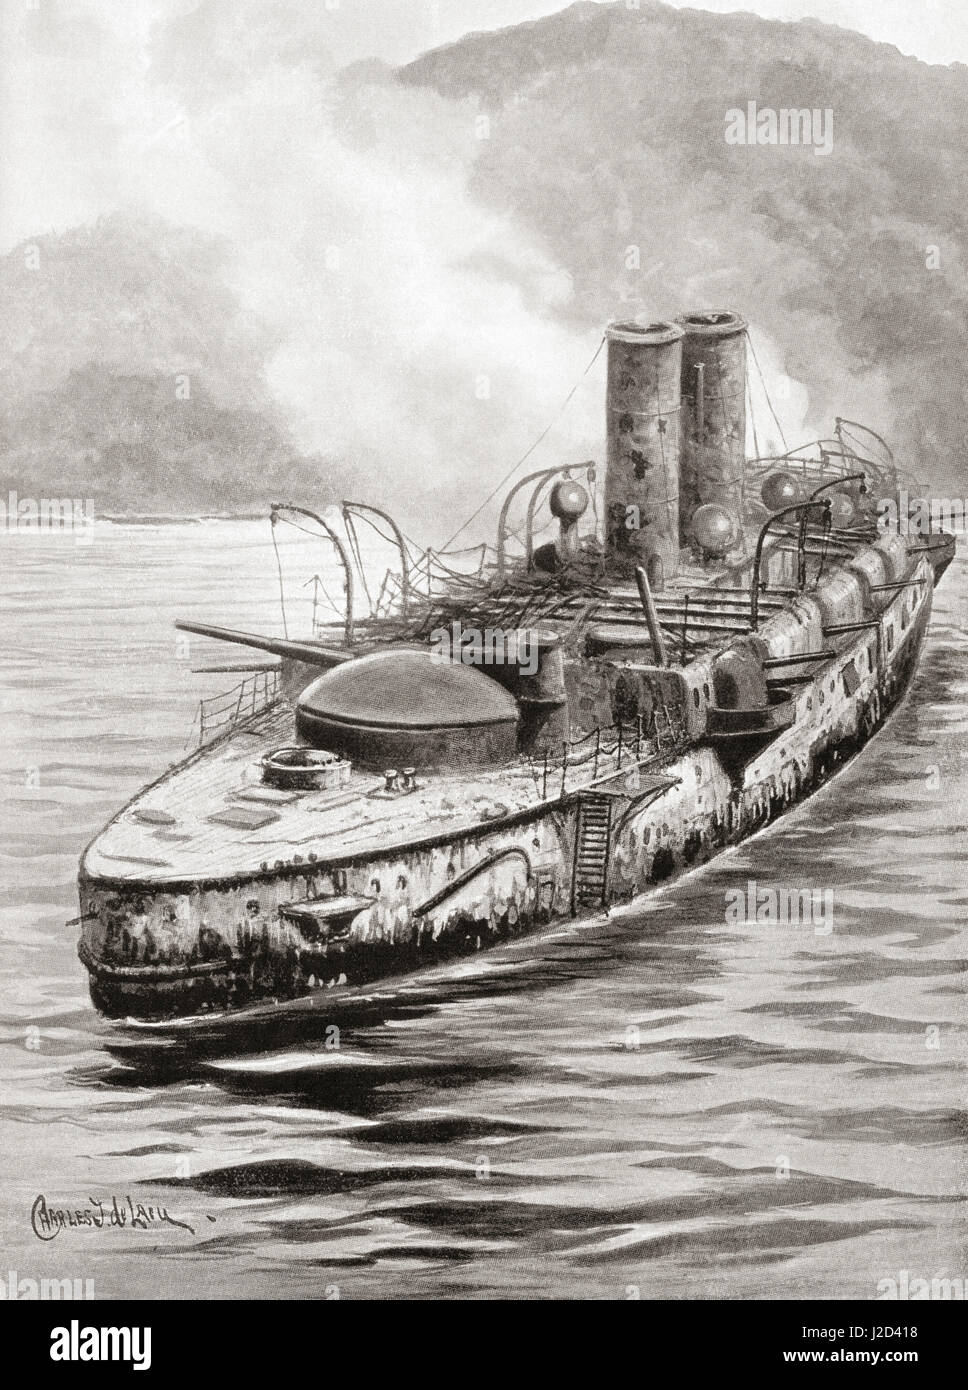 Le cuirassé espagnol Oquendo vu ici après l'engagement naval à la baie de Manille, au cours de la guerre hispano-américaine de 1898. L'histoire de Hutchinson de l'ONU, publié en 1915. Banque D'Images